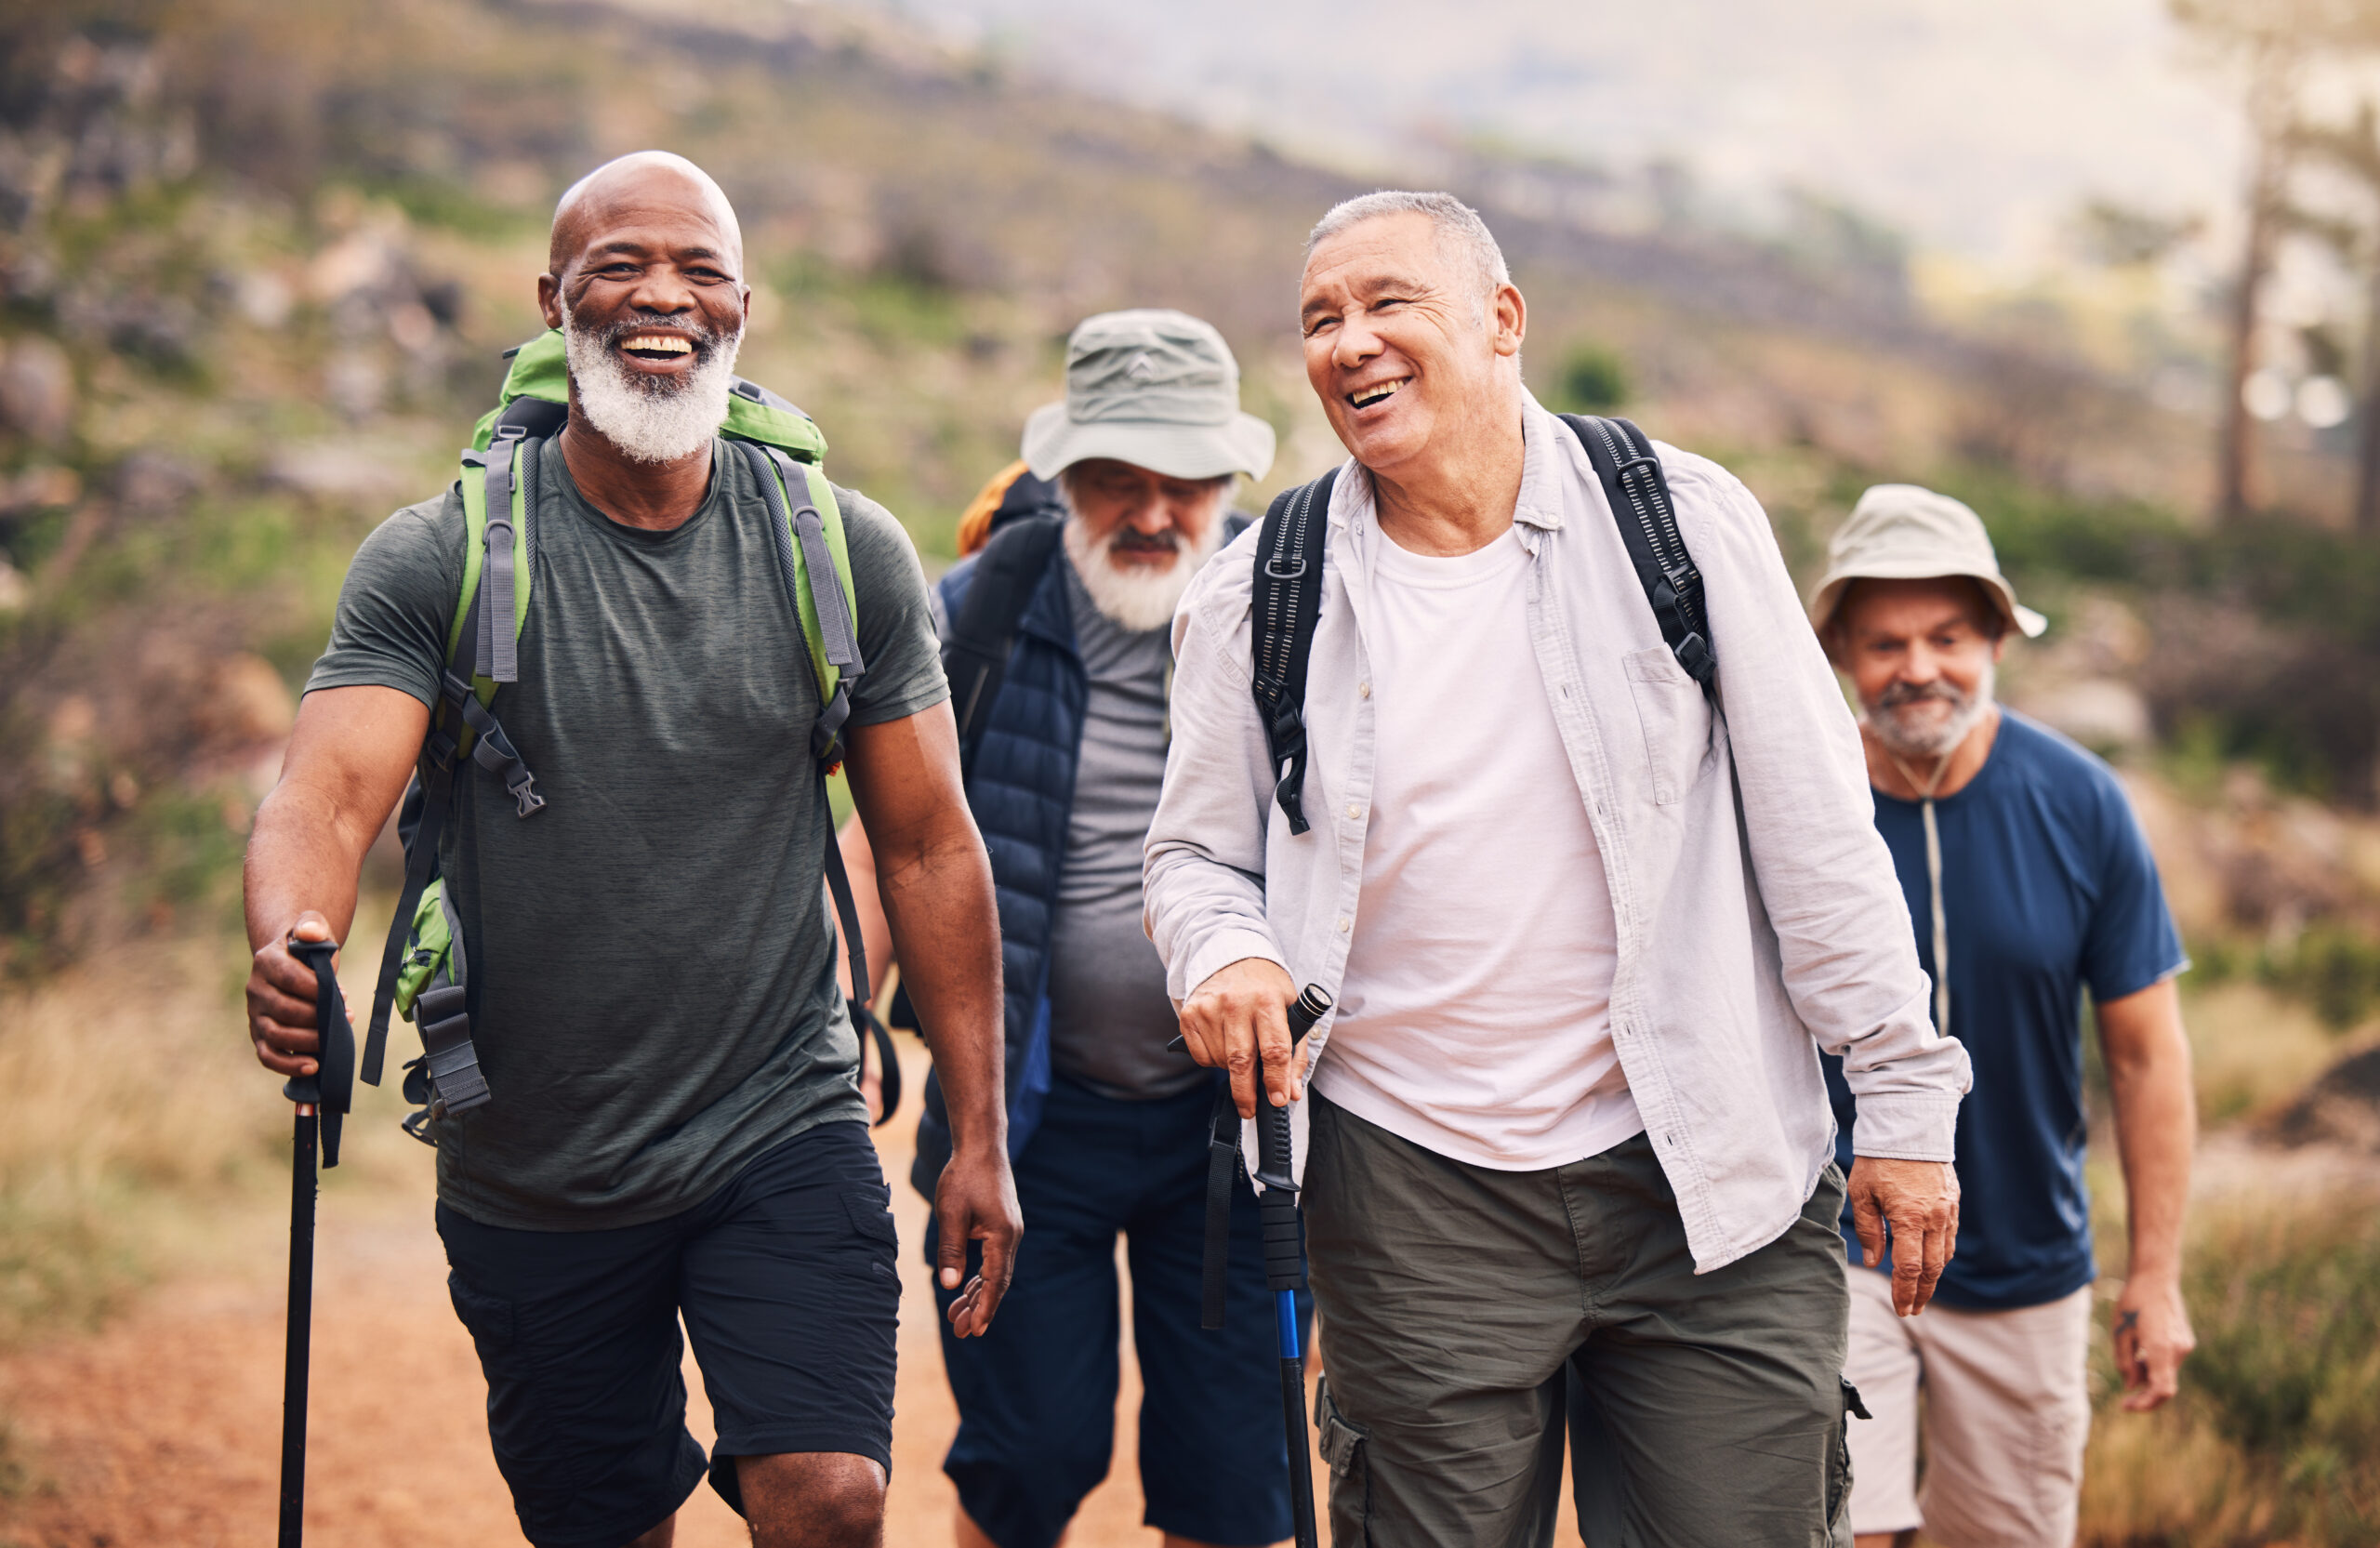 Older men can get prostate cancer